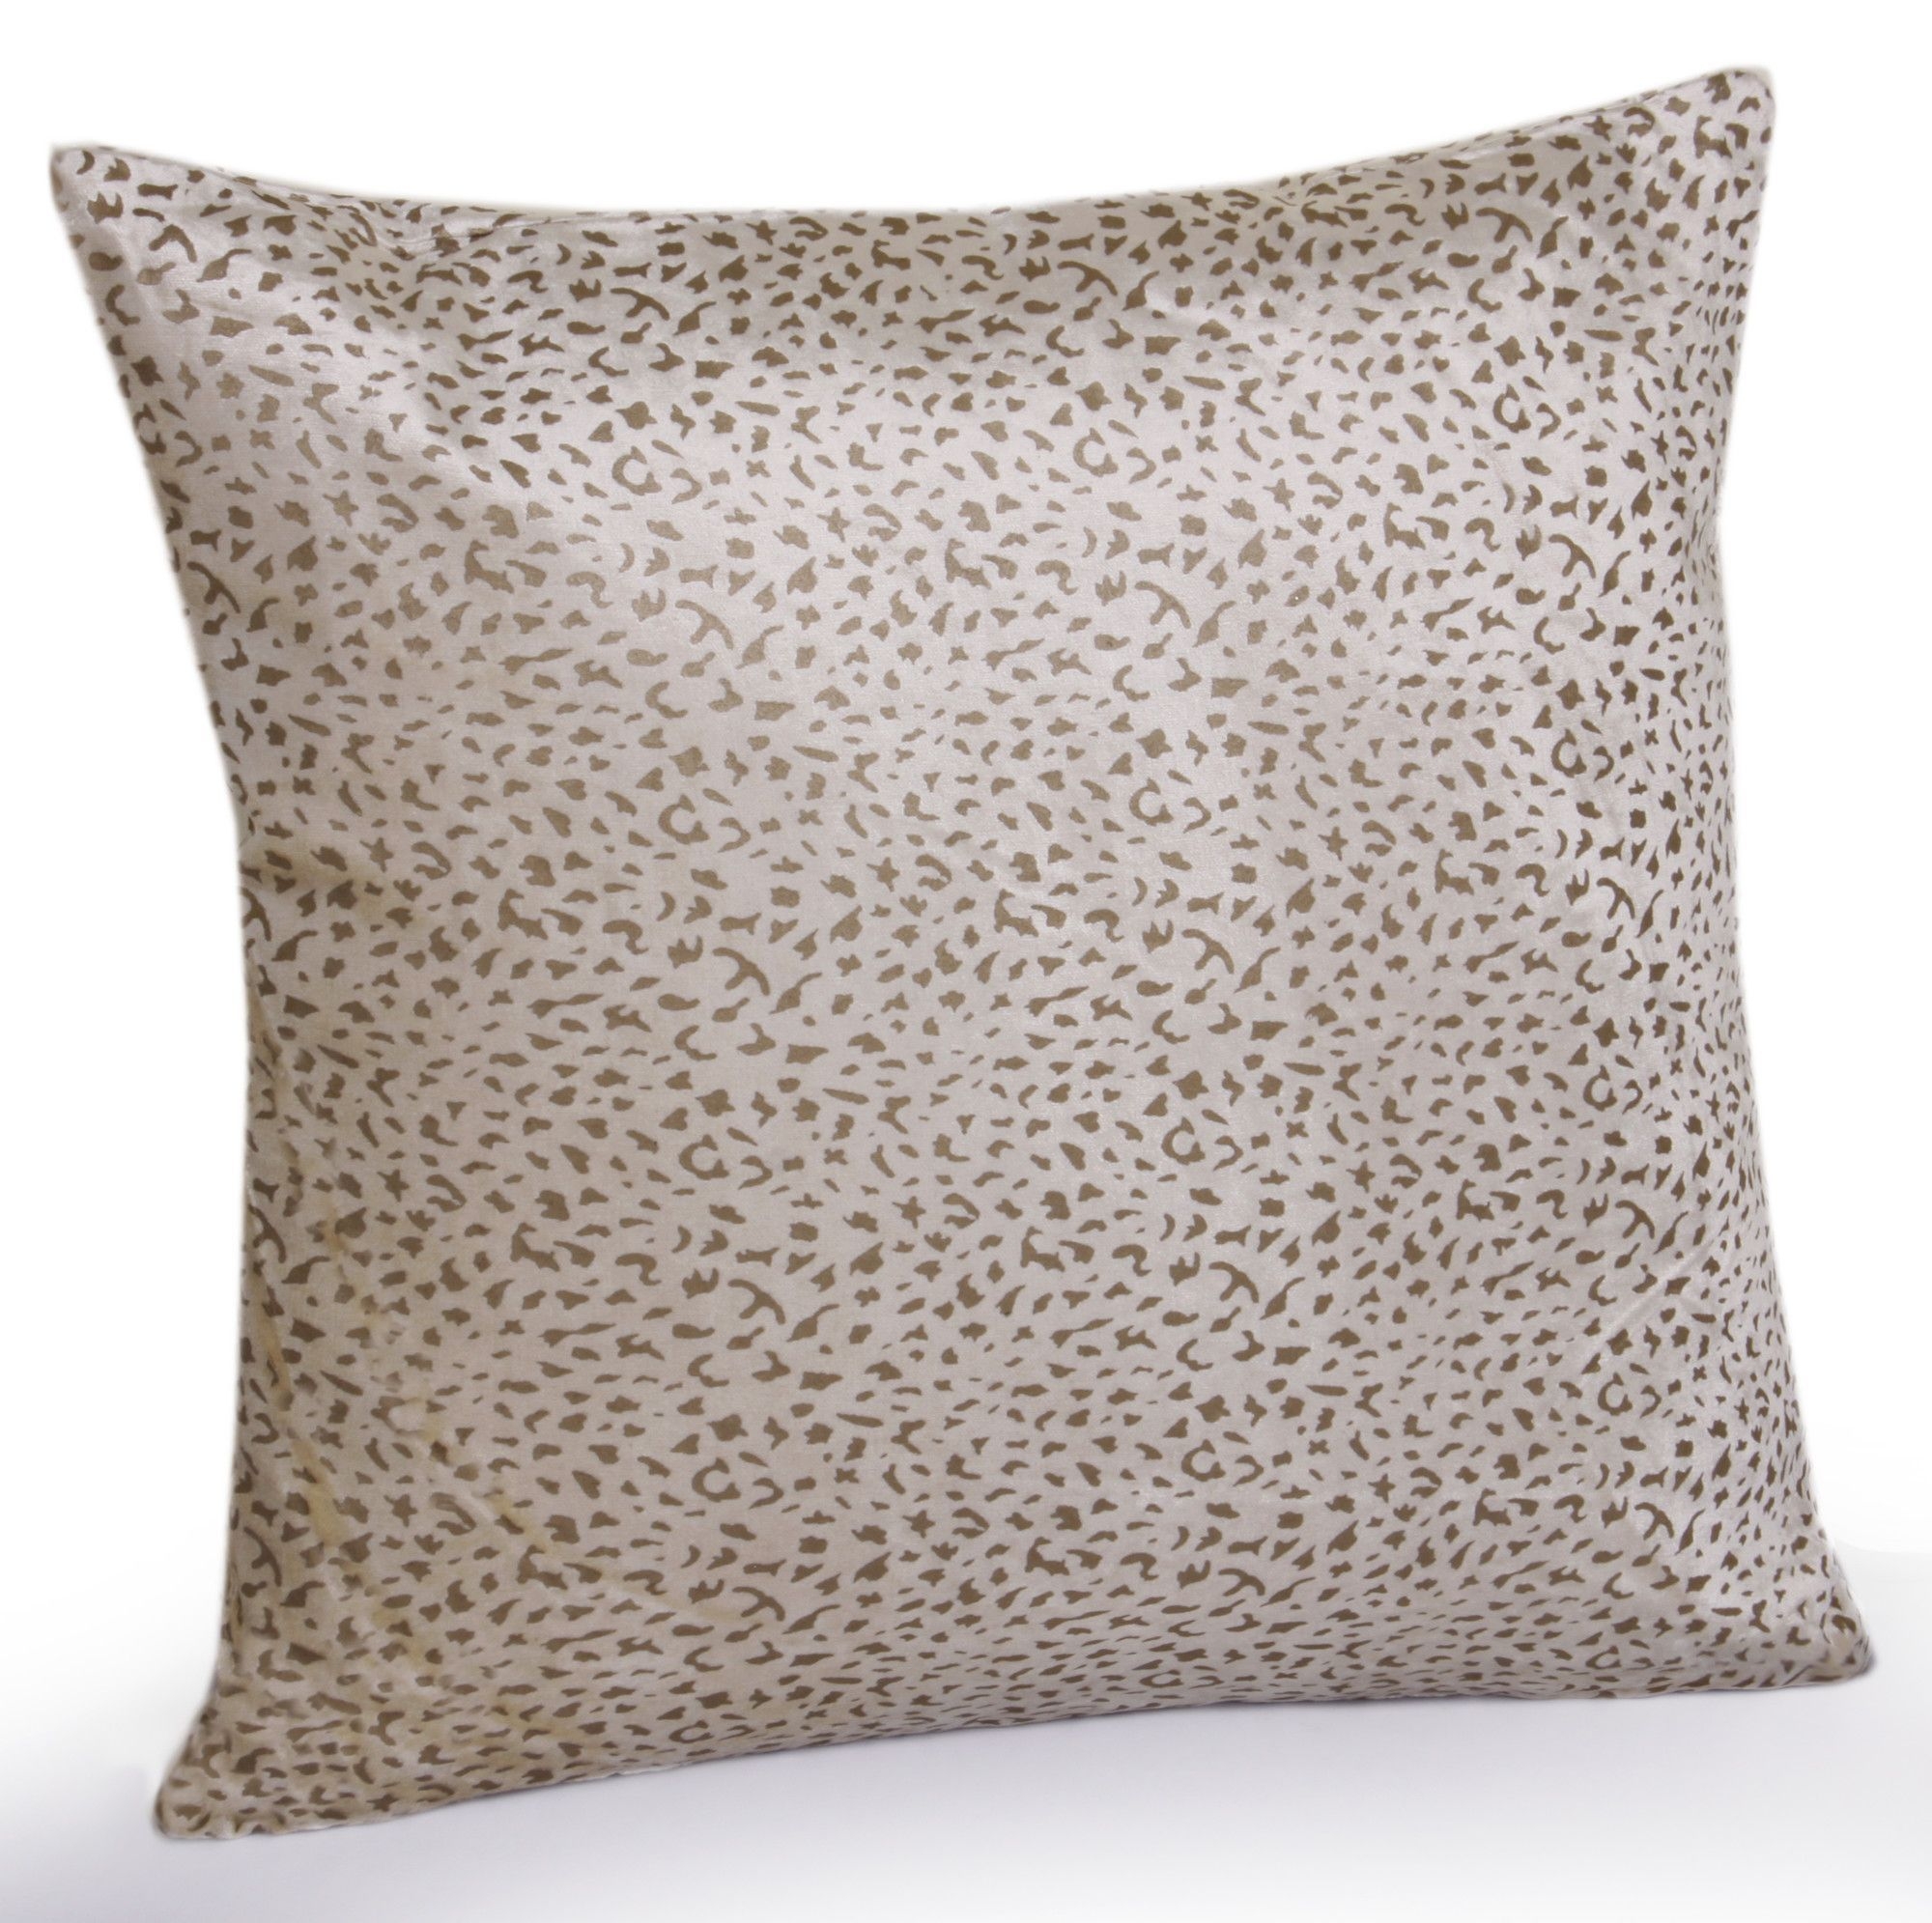 Leopard Throw Pillow